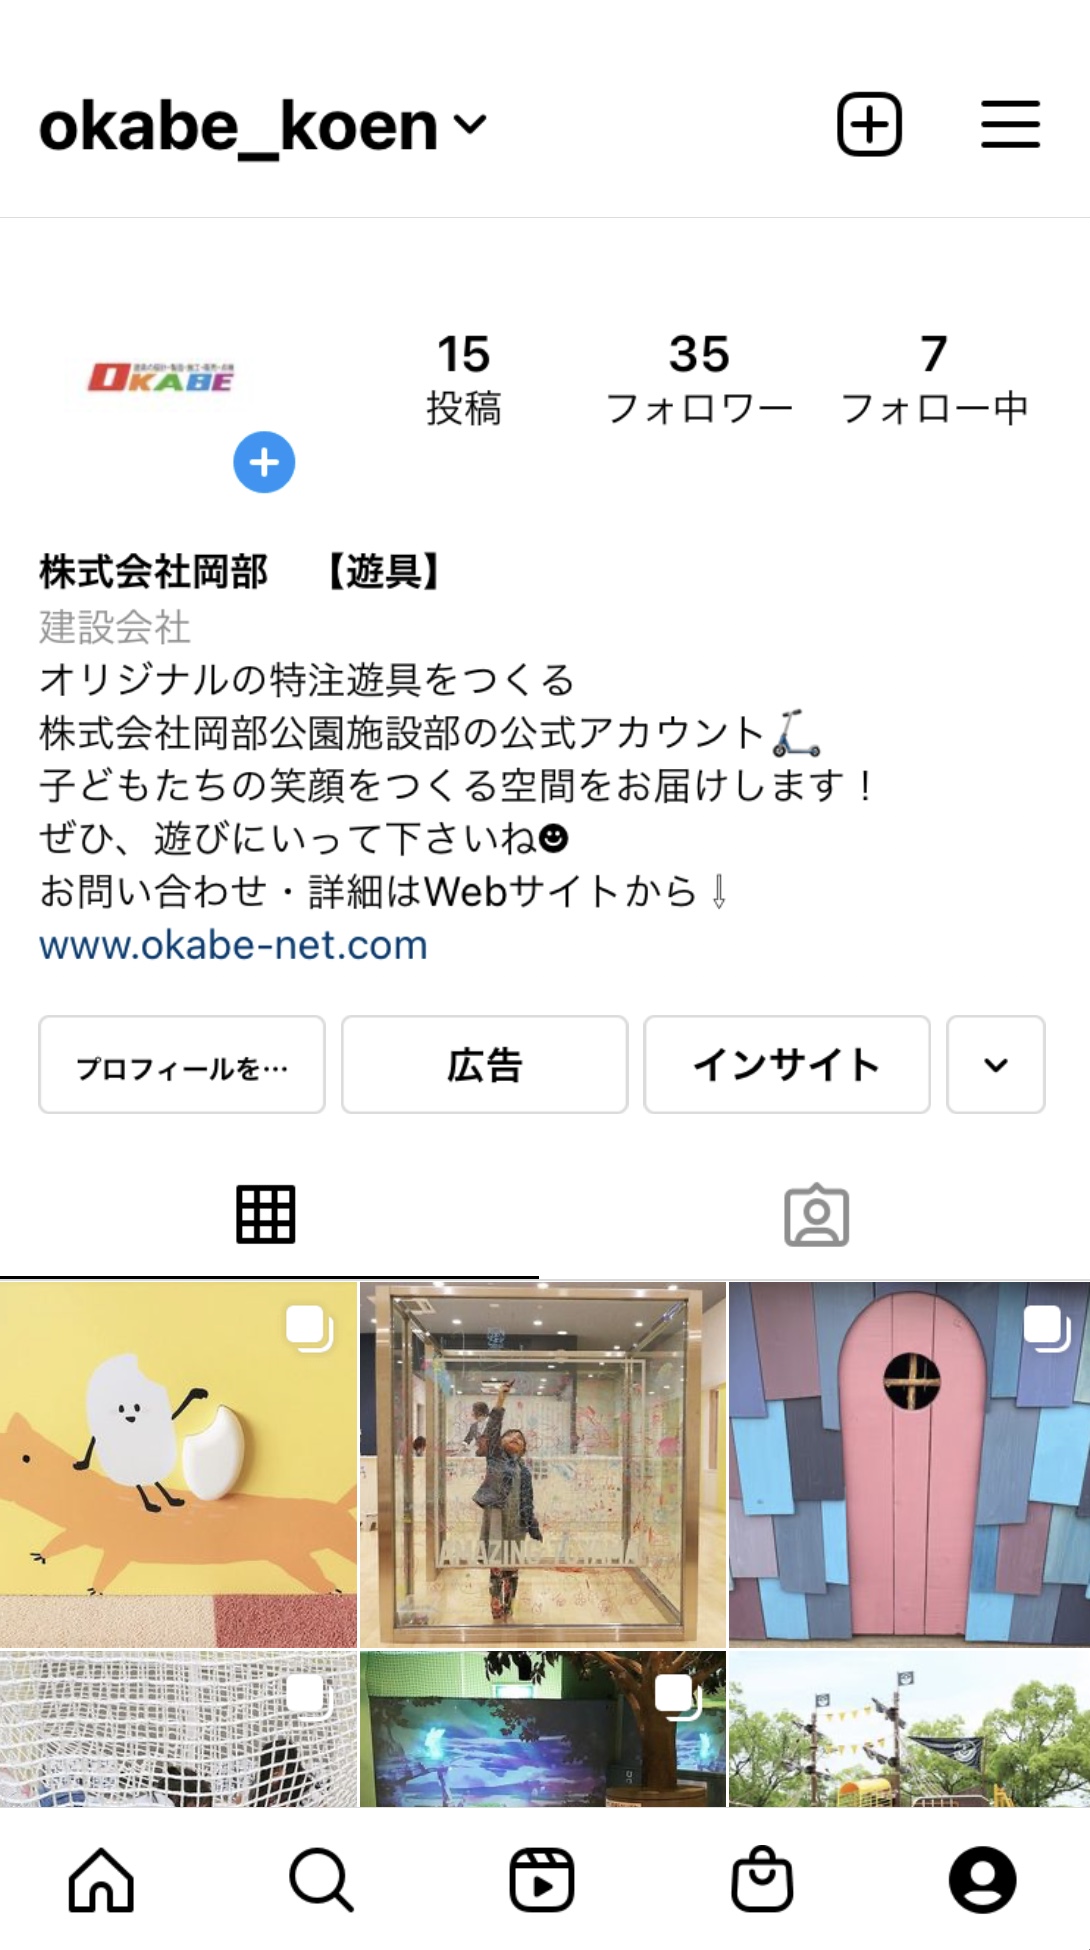 株式会社岡部公式Instagramアカウント